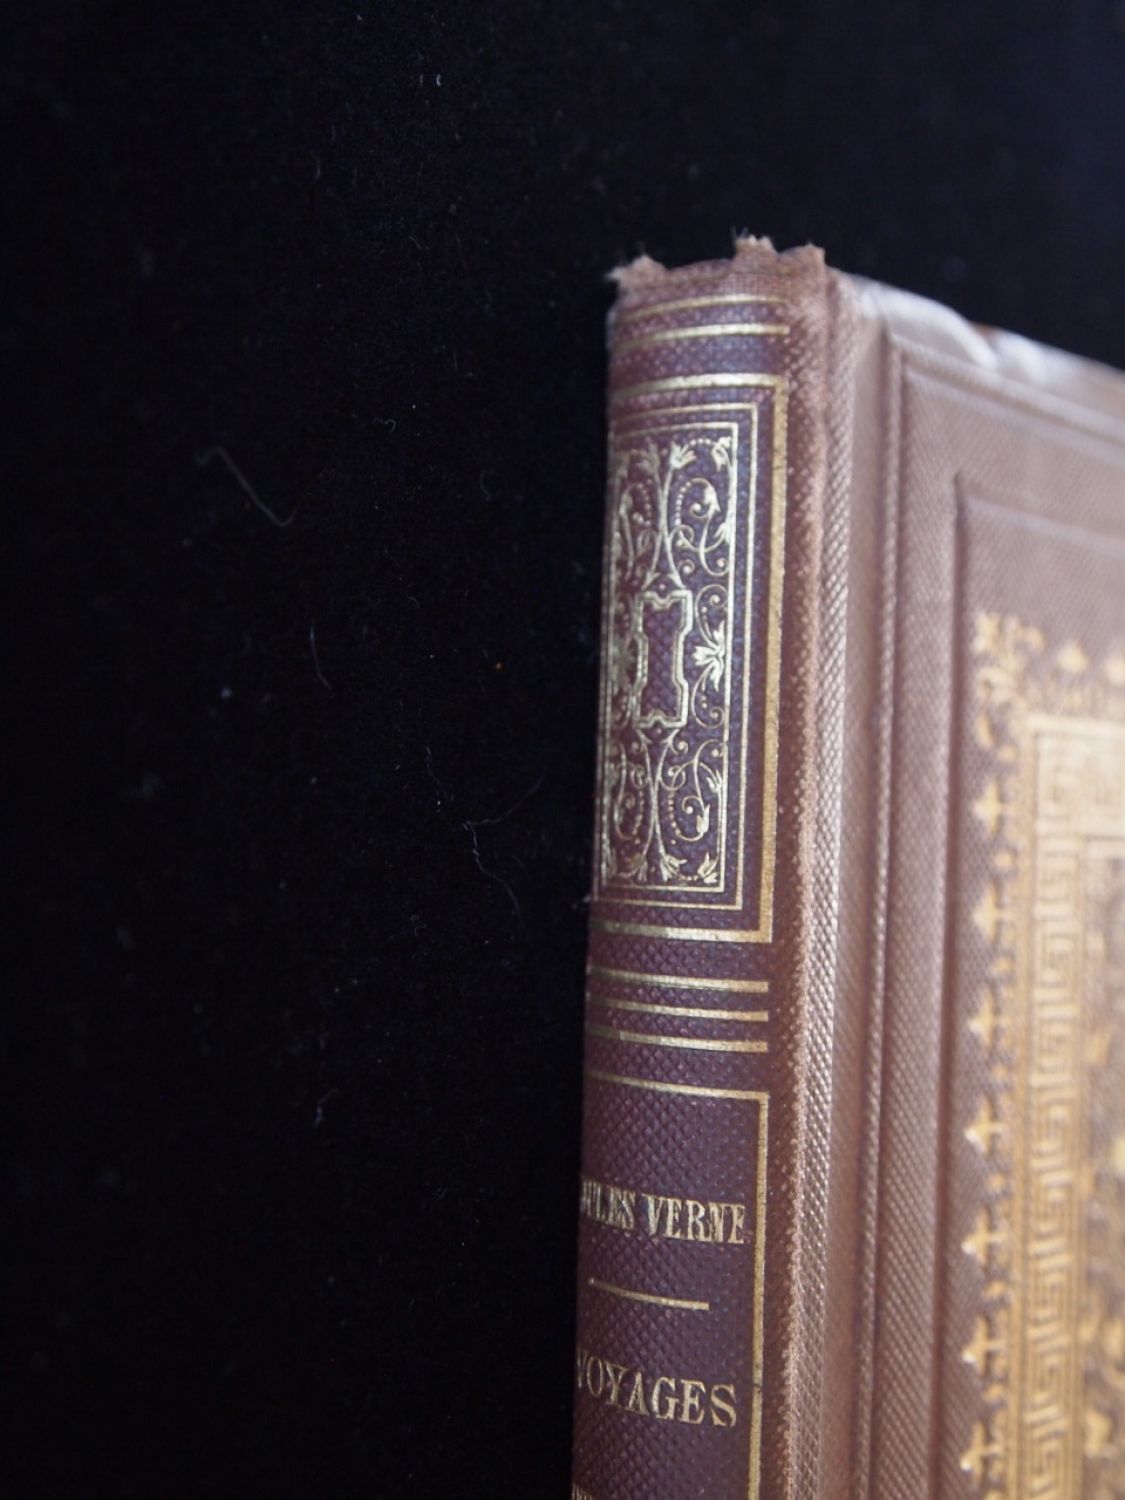  Voyage Au Centre de la Terre (Le Livre de Poche) (French  Edition): 9782253012542: Jules Verne, Verne, Jules: Books